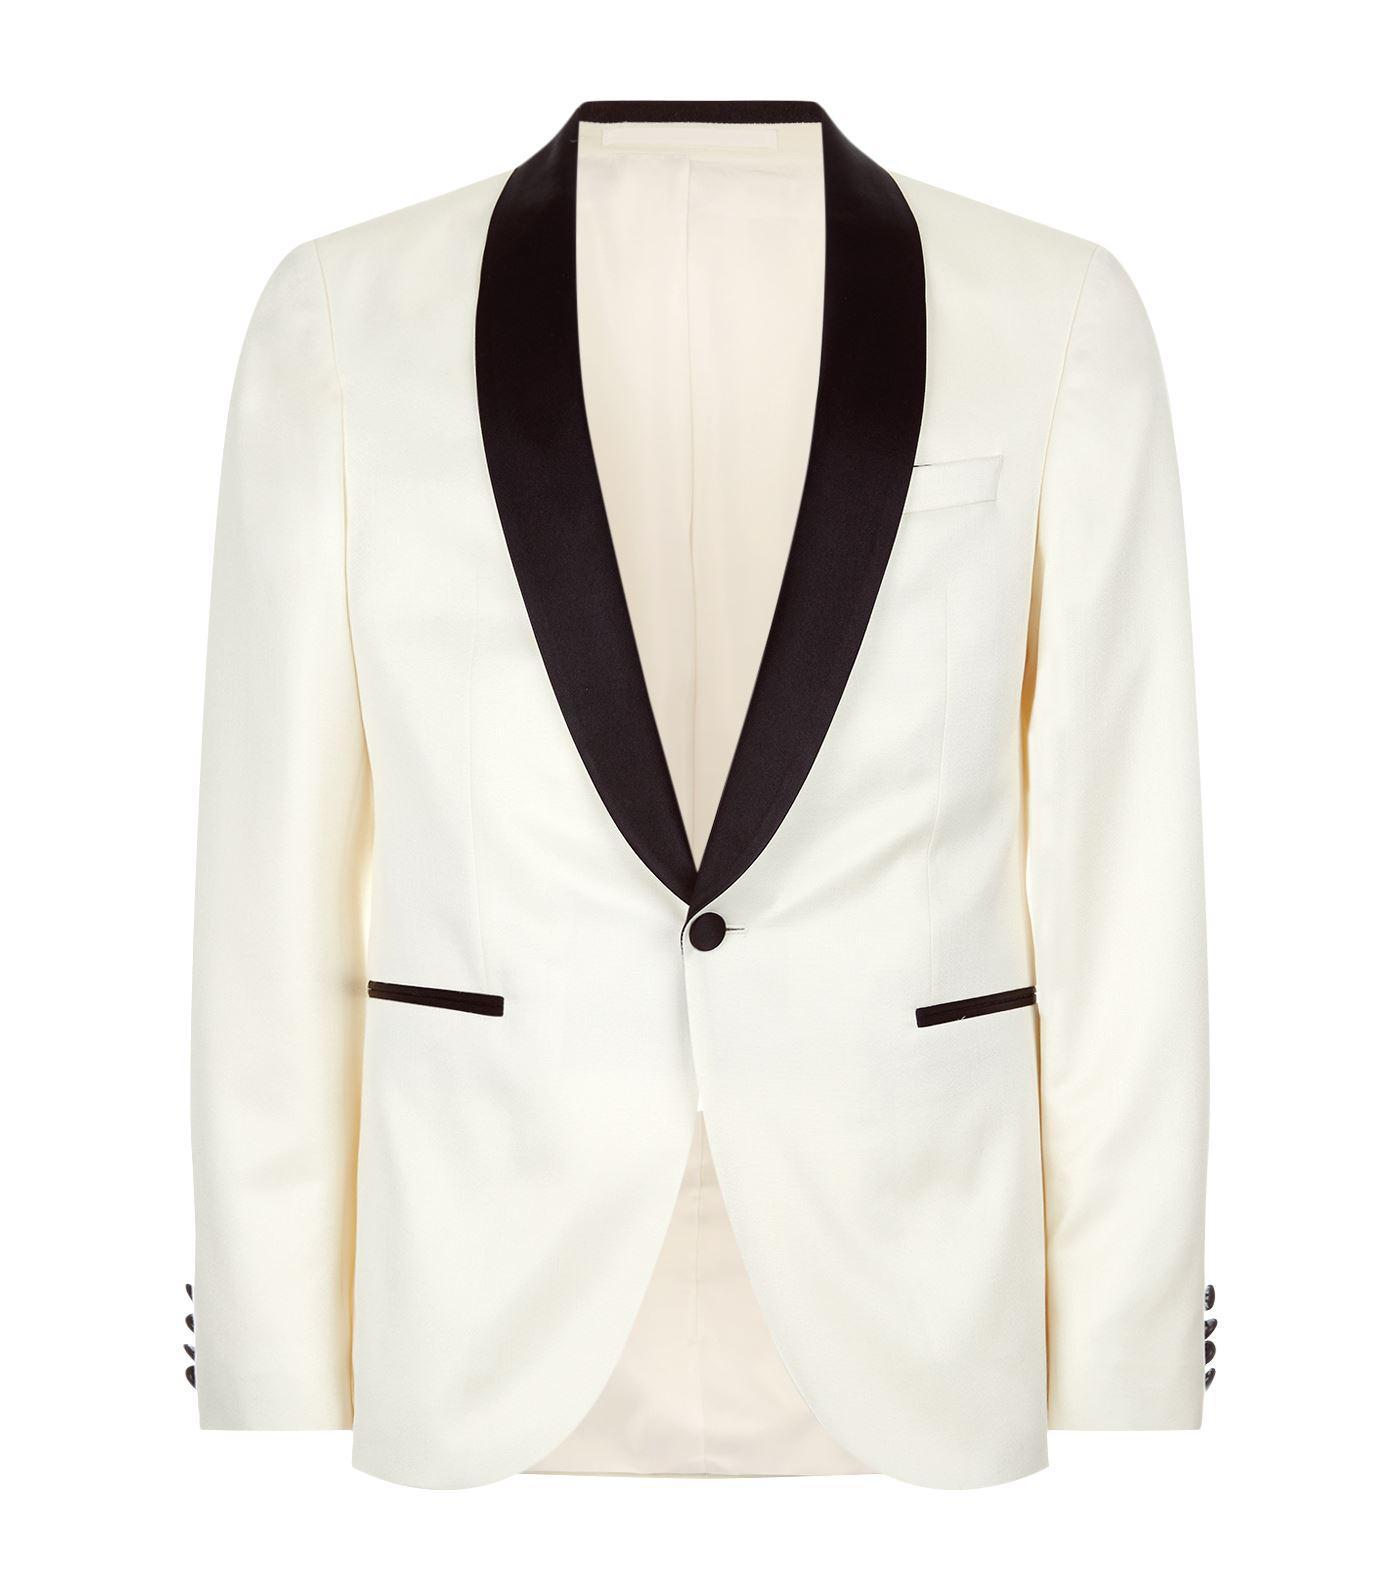 BOSS by HUGO BOSS Wool Nemir Dinner Jacket in White for Men - Lyst